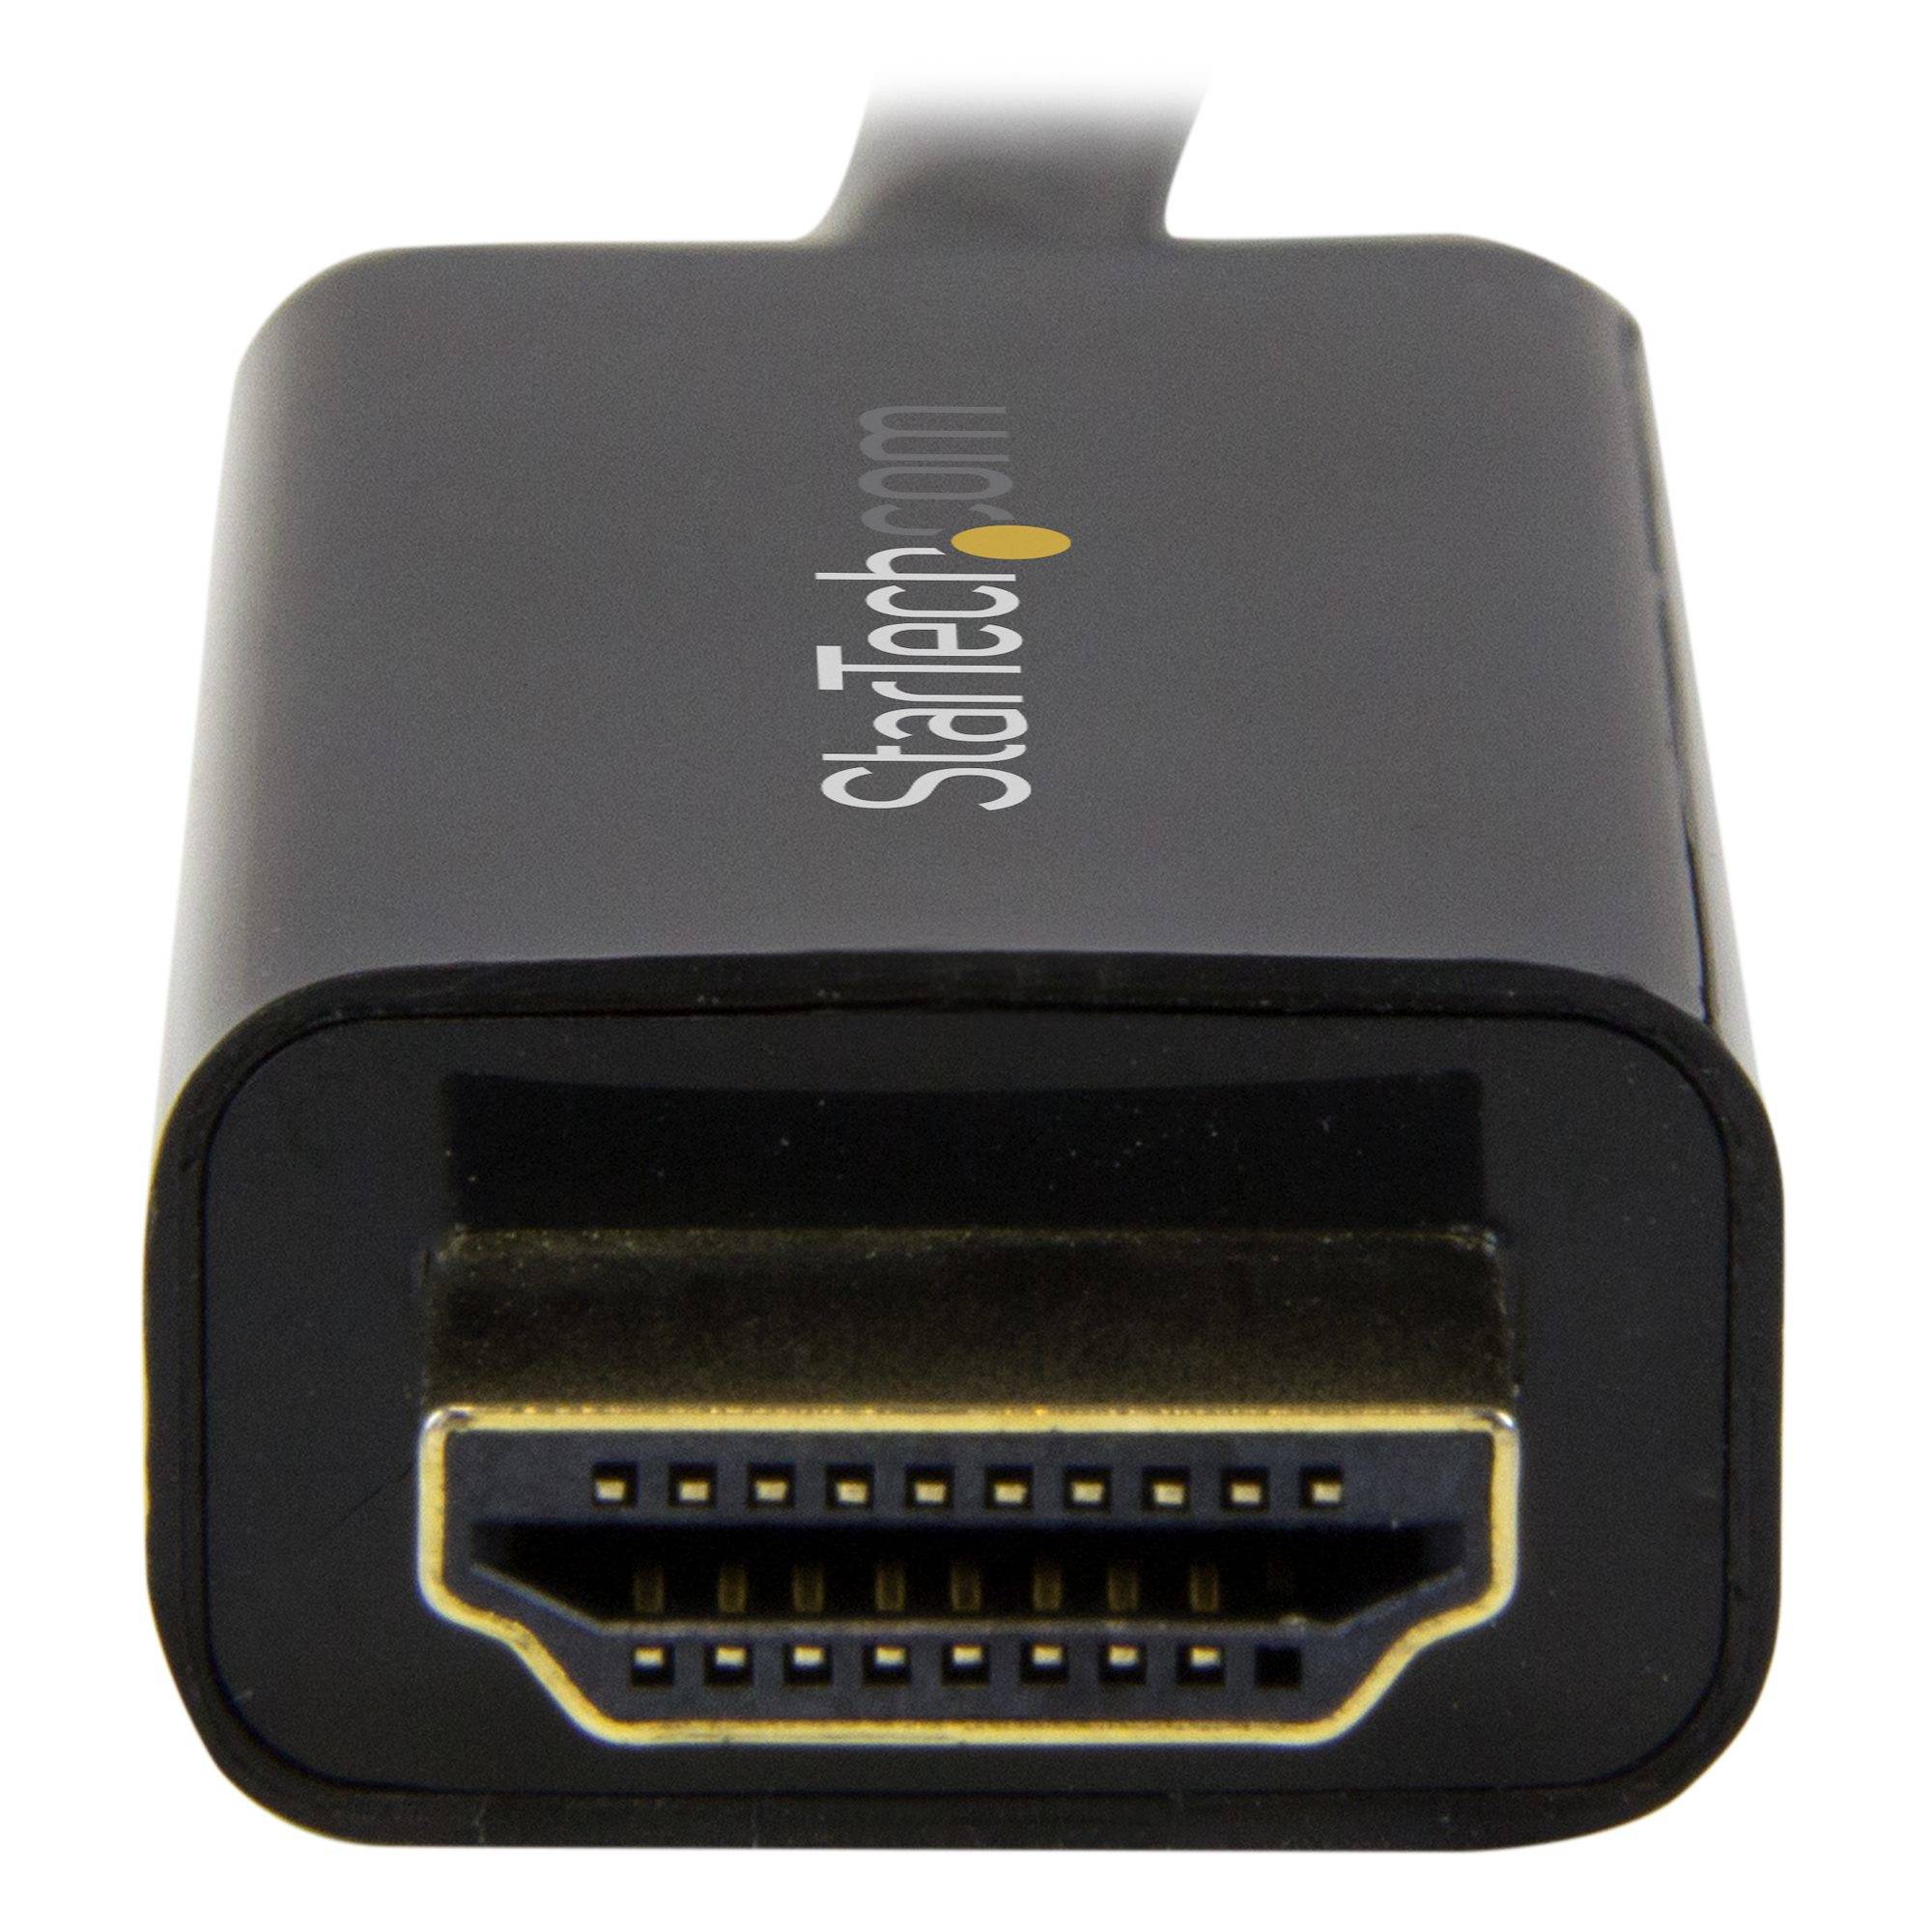 Rca Informatique - image du produit : CABLE ADAPTATEUR DISPLAYPORT VERS HDMI DE 2 M - M/M - 4K